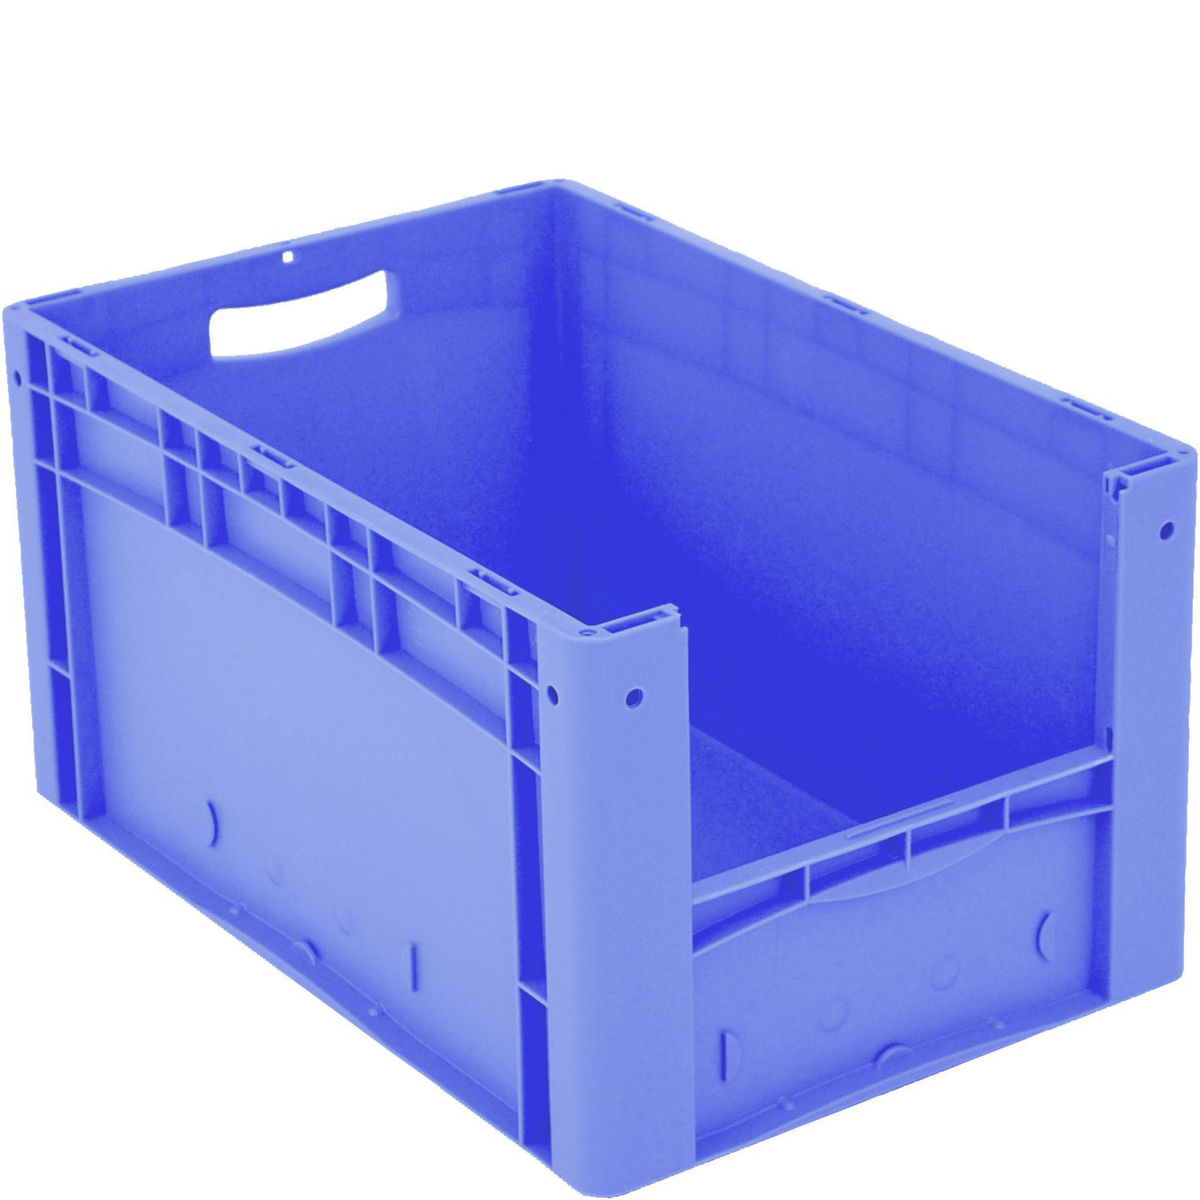 Euronorm zichtbare opslagcontainer met toegangsopening, blauw, HxLxB 320x600x400 mm  ZOOM